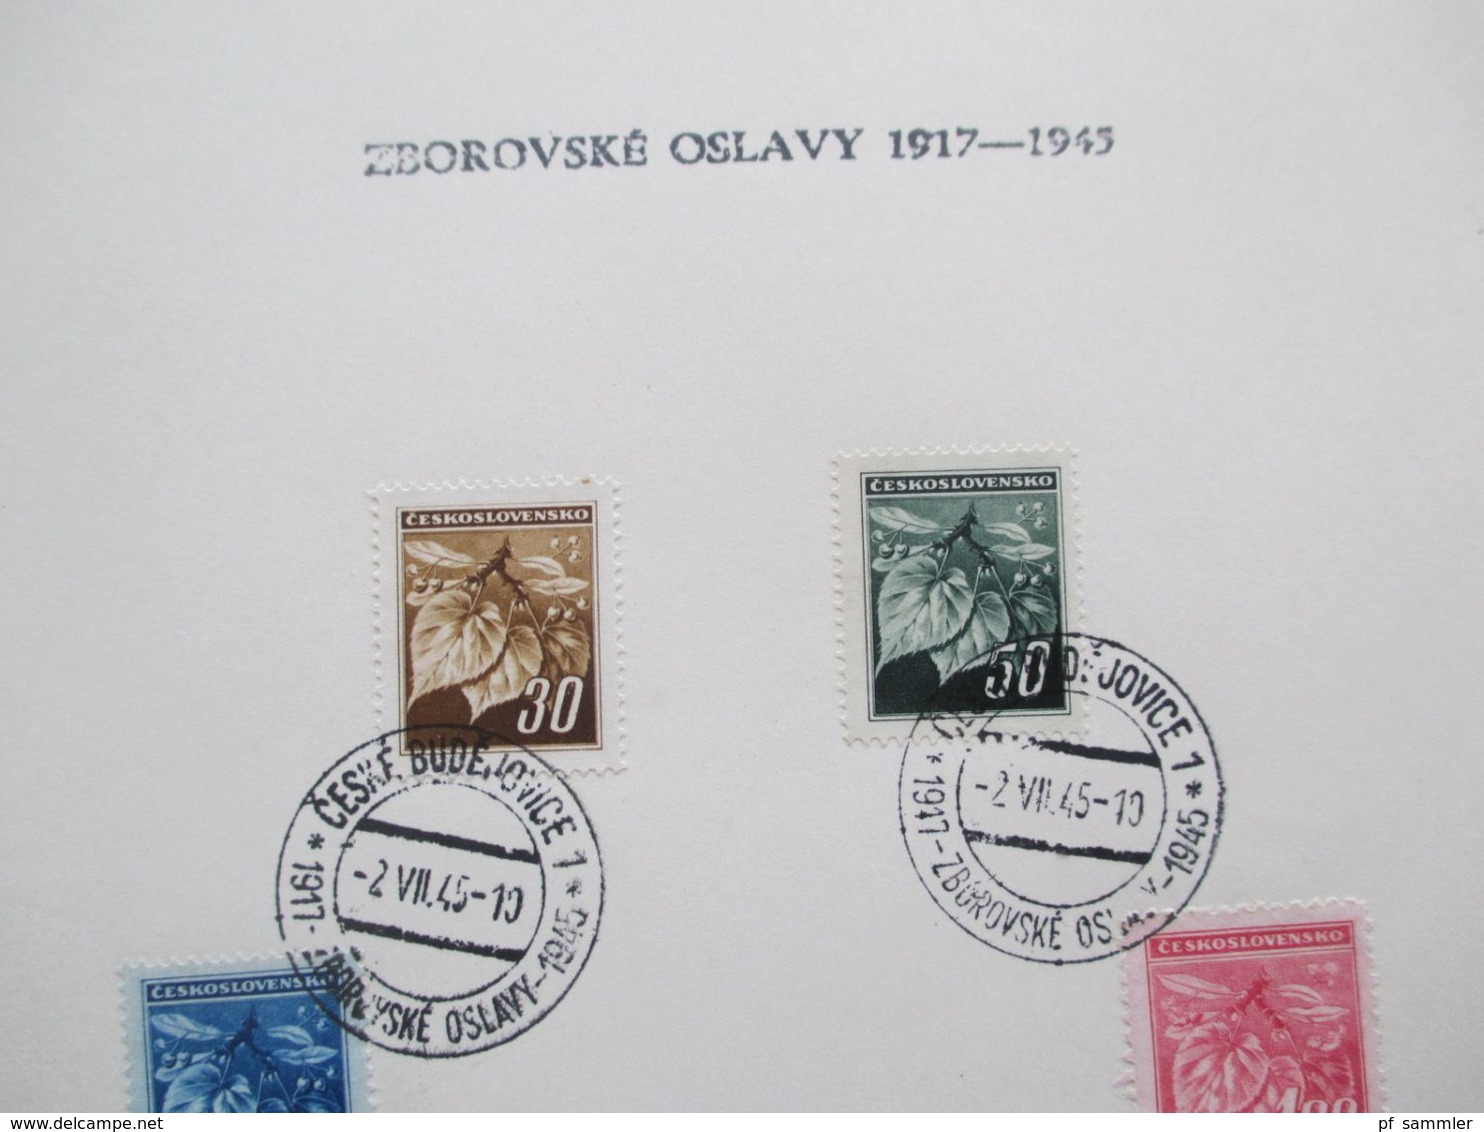 CSSR 2.7.1945 Sonderblätter Zborovske Oslavy 1917 - 1945 Stempel Ceske Budejovice 5 Blätter - Covers & Documents